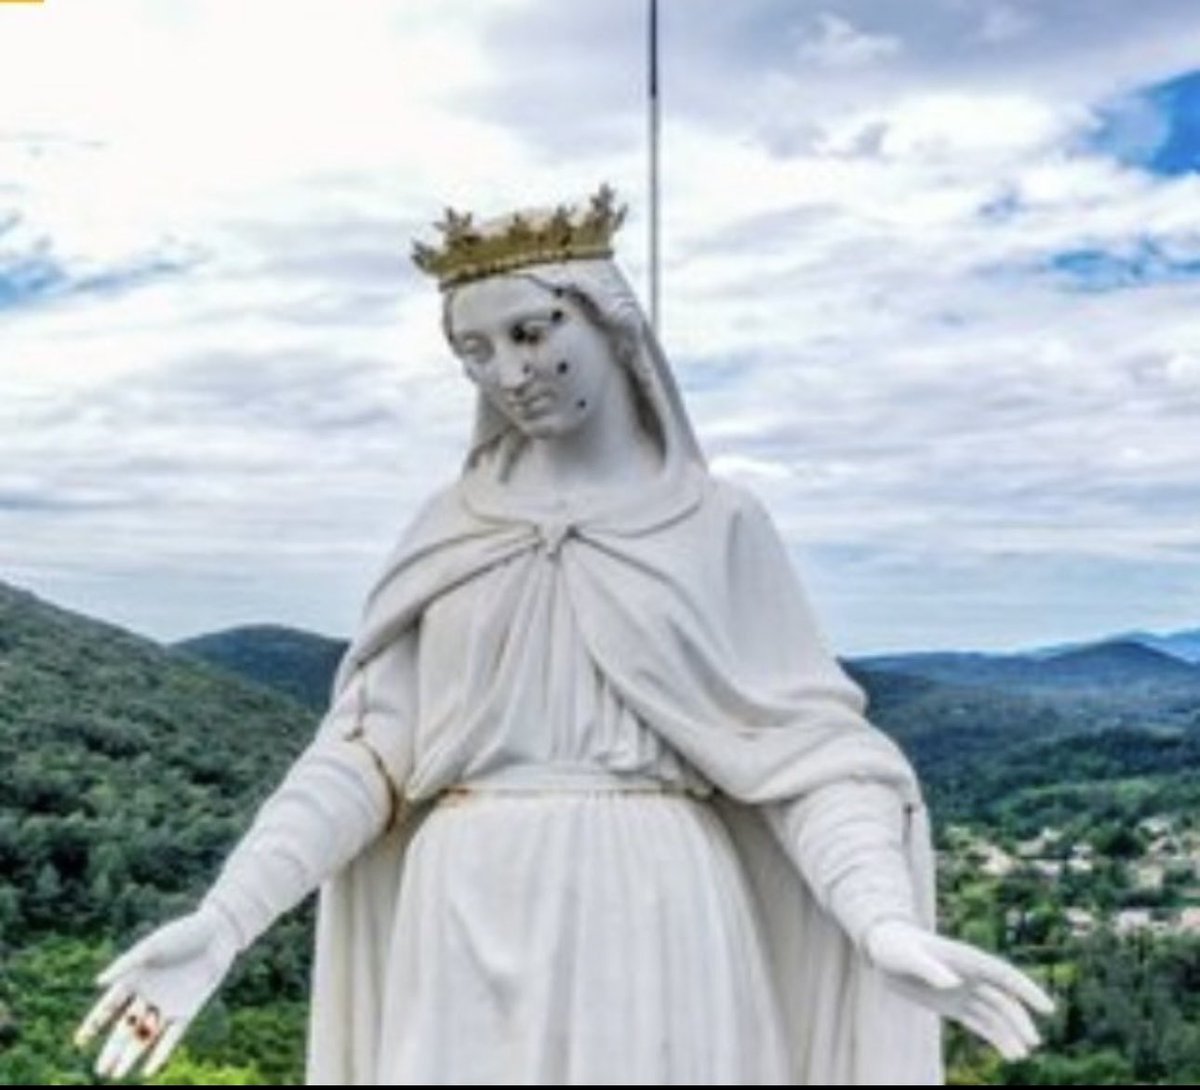 Comment peut-on cribler de balles une statue de la Vierge Marie? (Gard). Silence gênant. #facealinfo